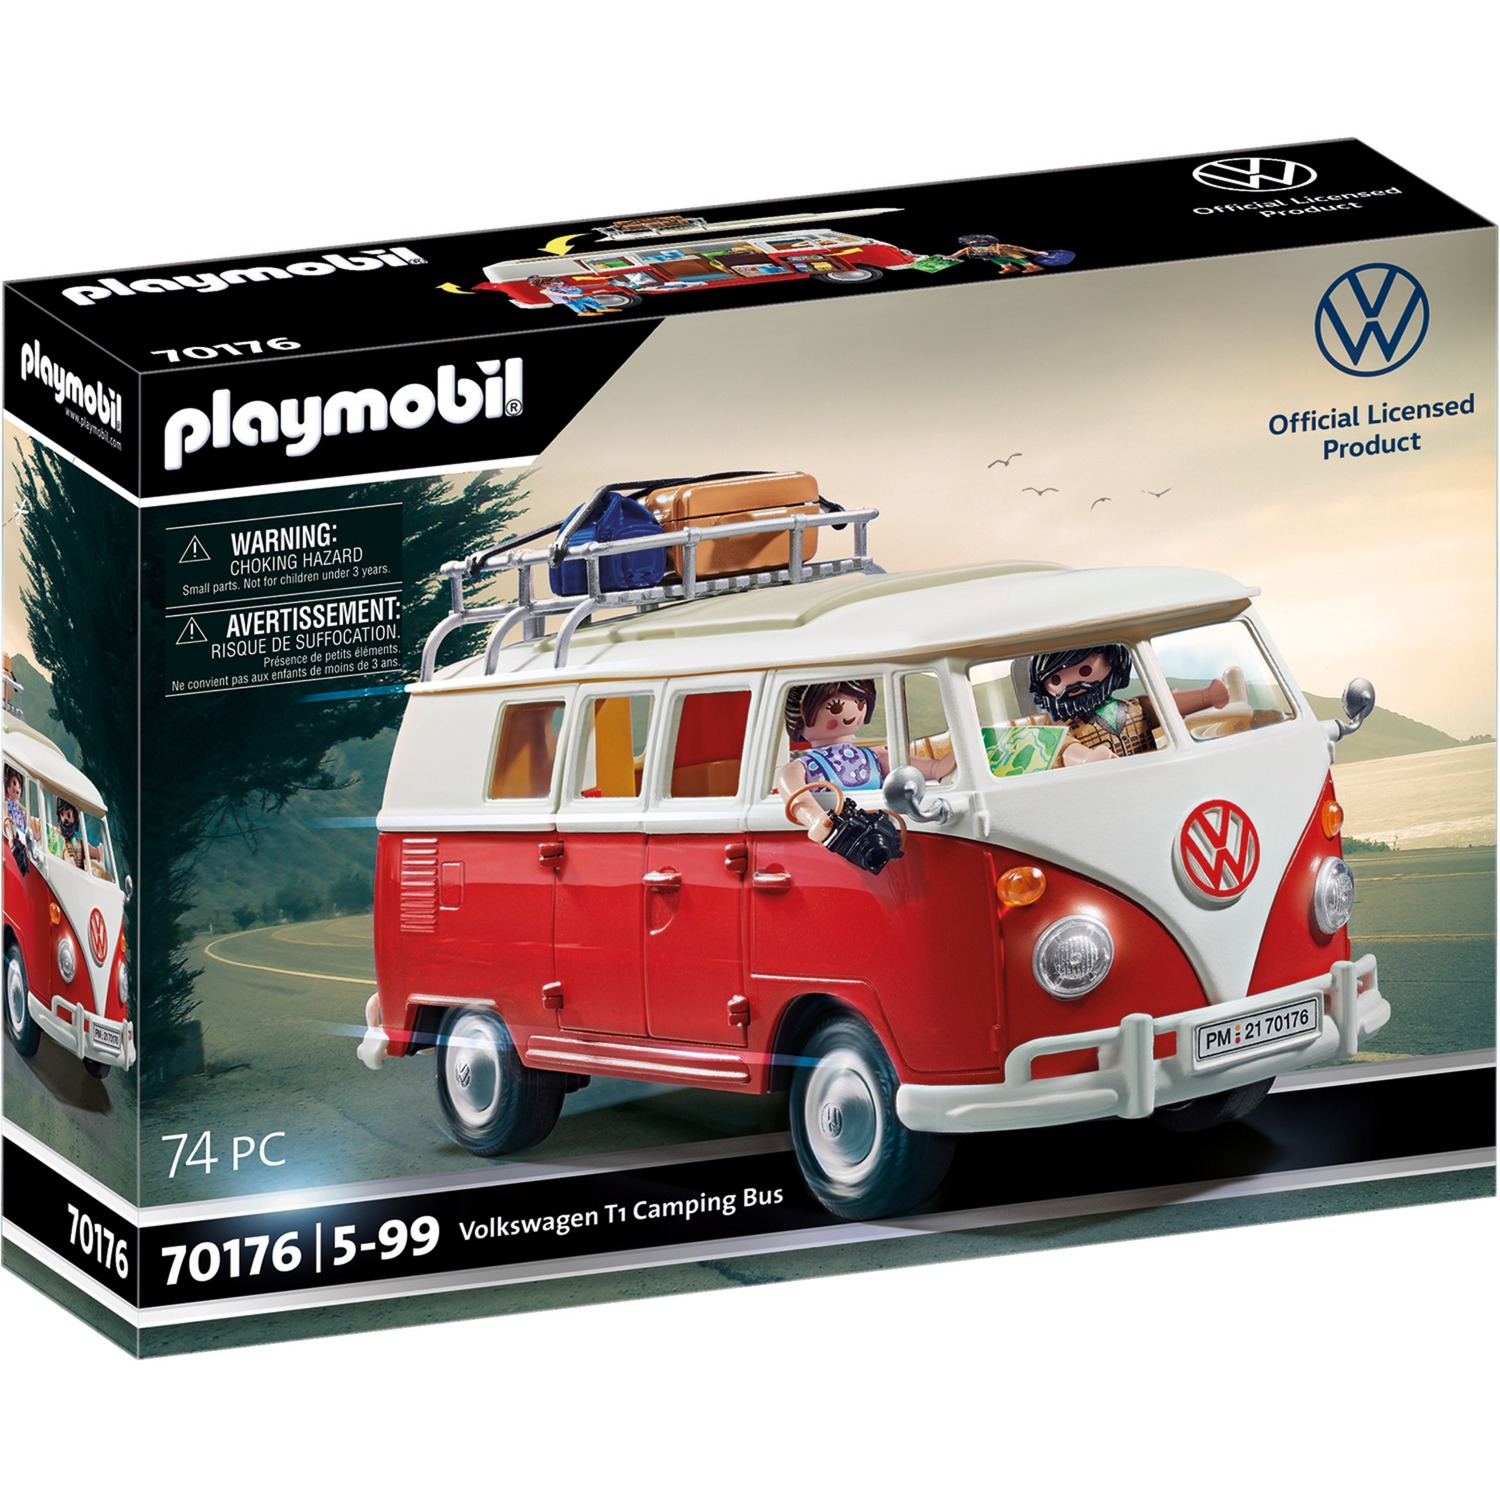 Image of Alternate - 70176 Volkswagen T1 Camping Bus, Konstruktionsspielzeug online einkaufen bei Alternate